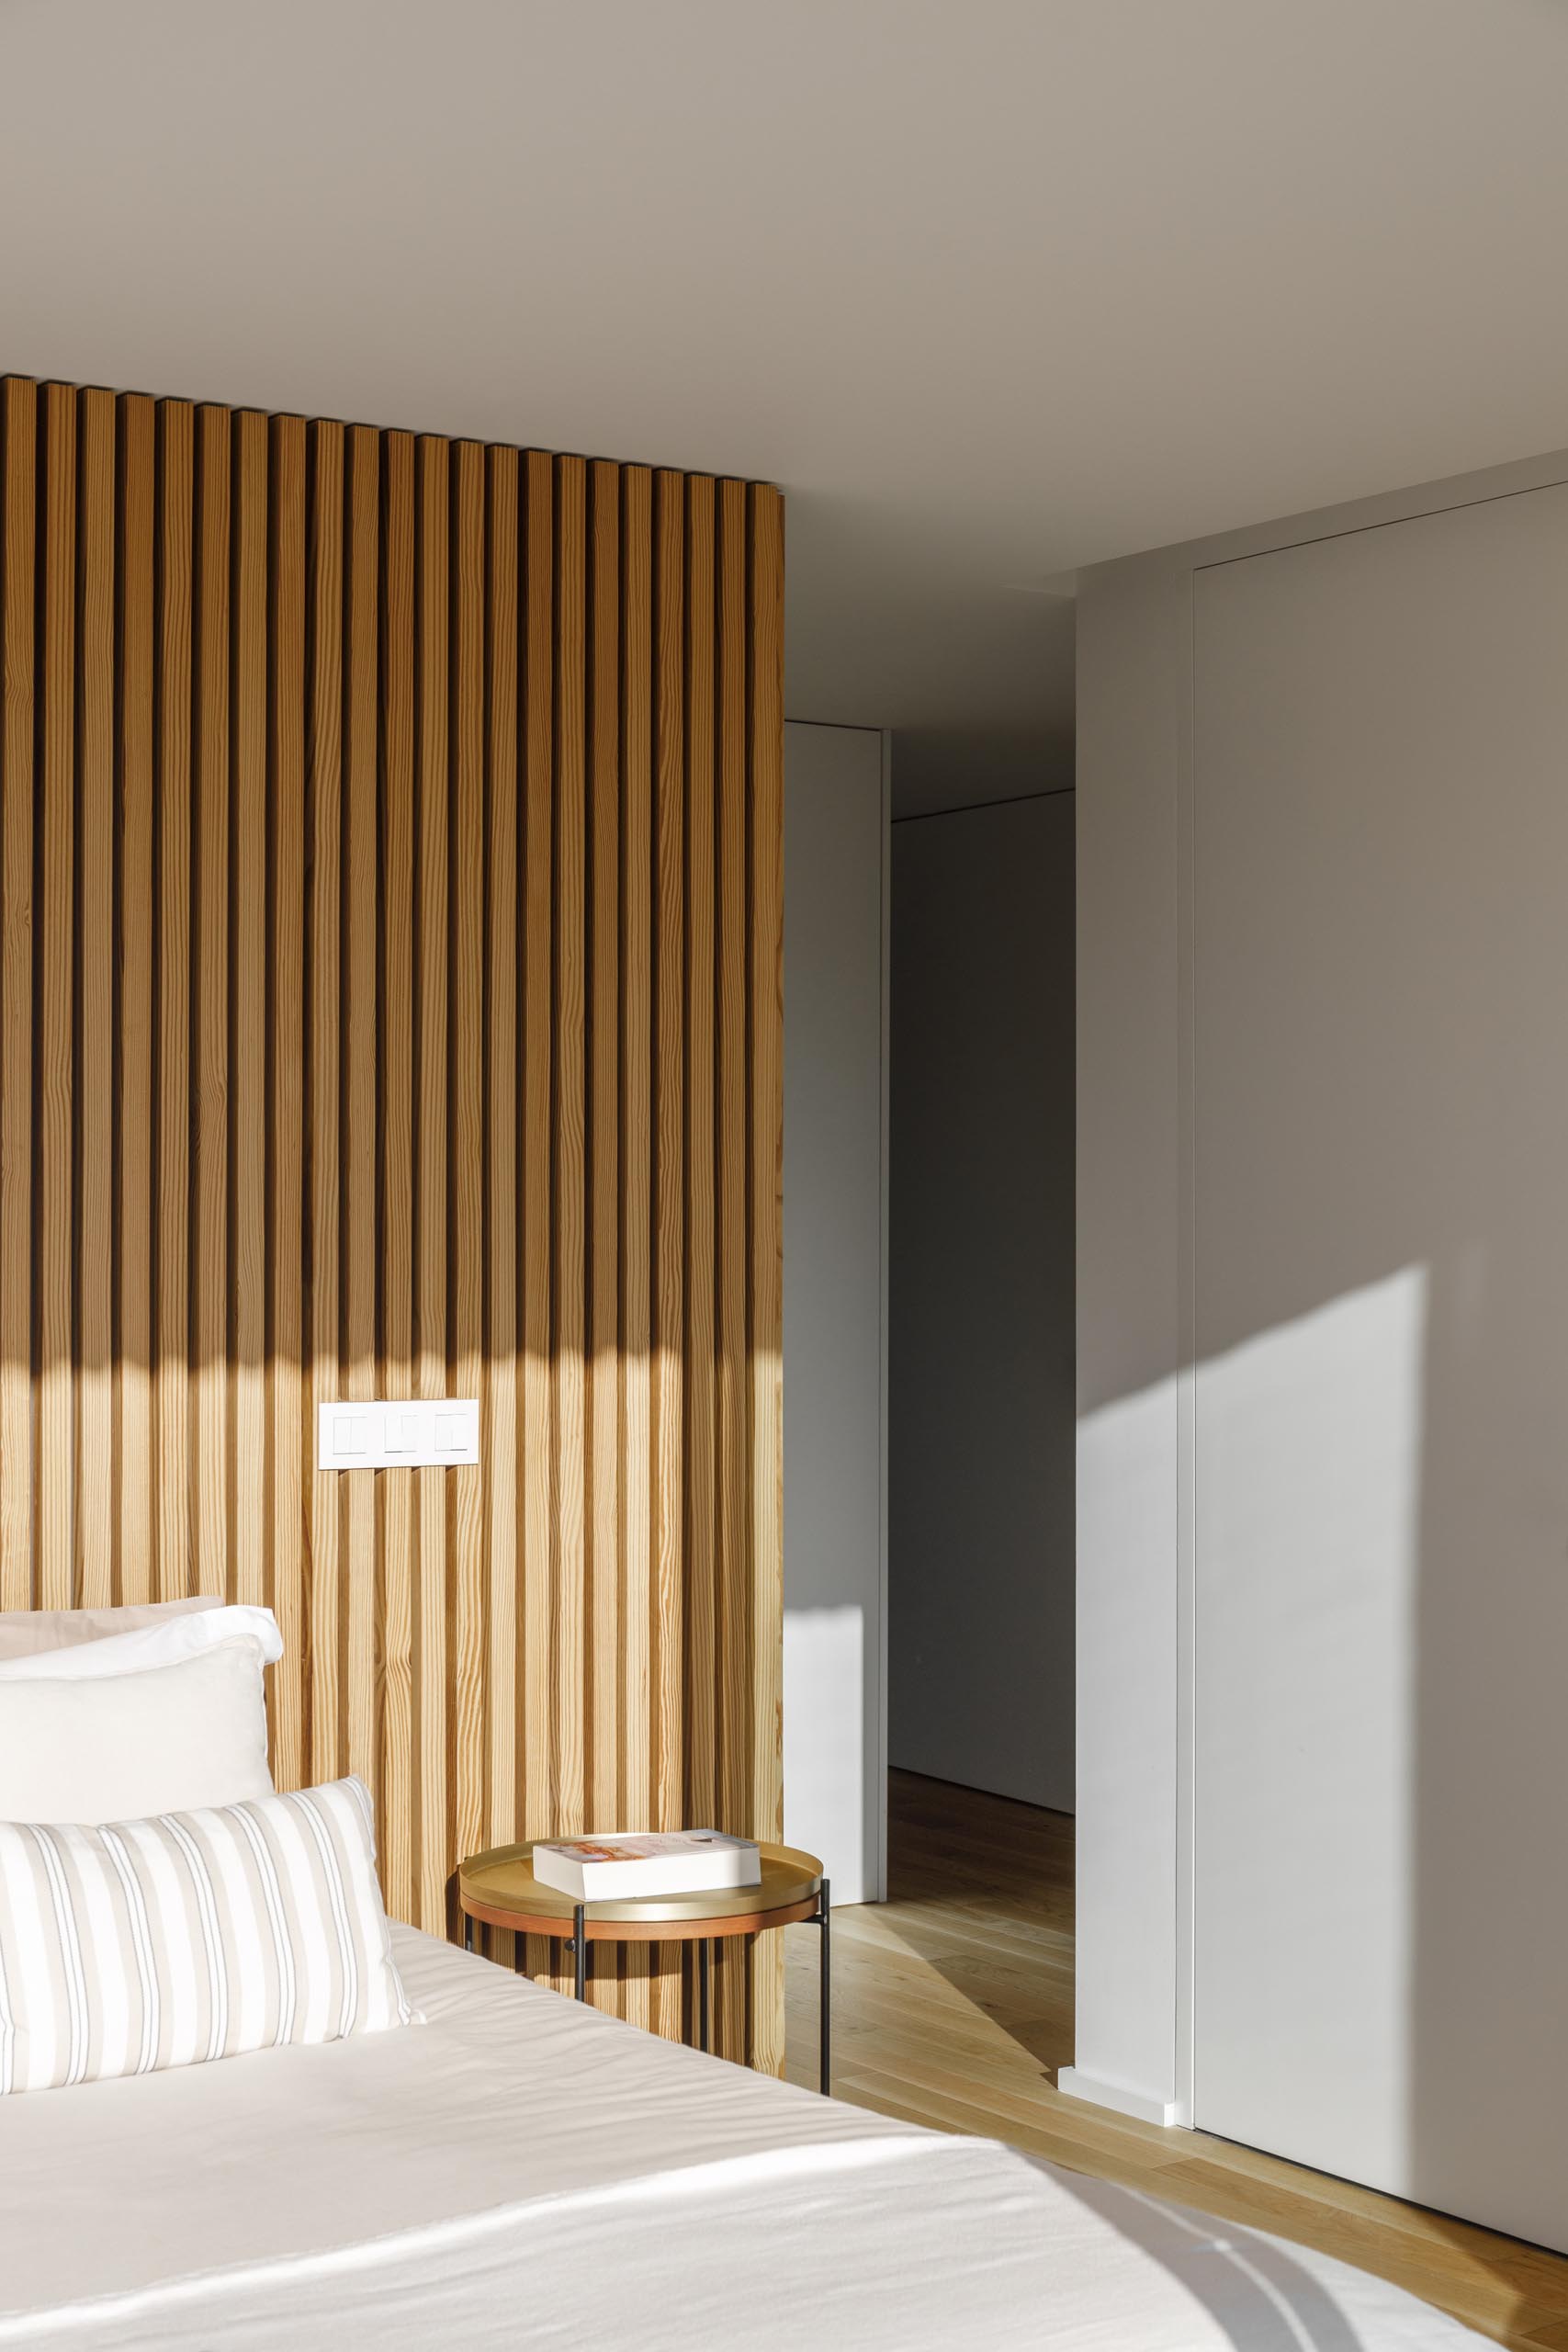 Современная спальня с акцентной стеной из деревянных реек.